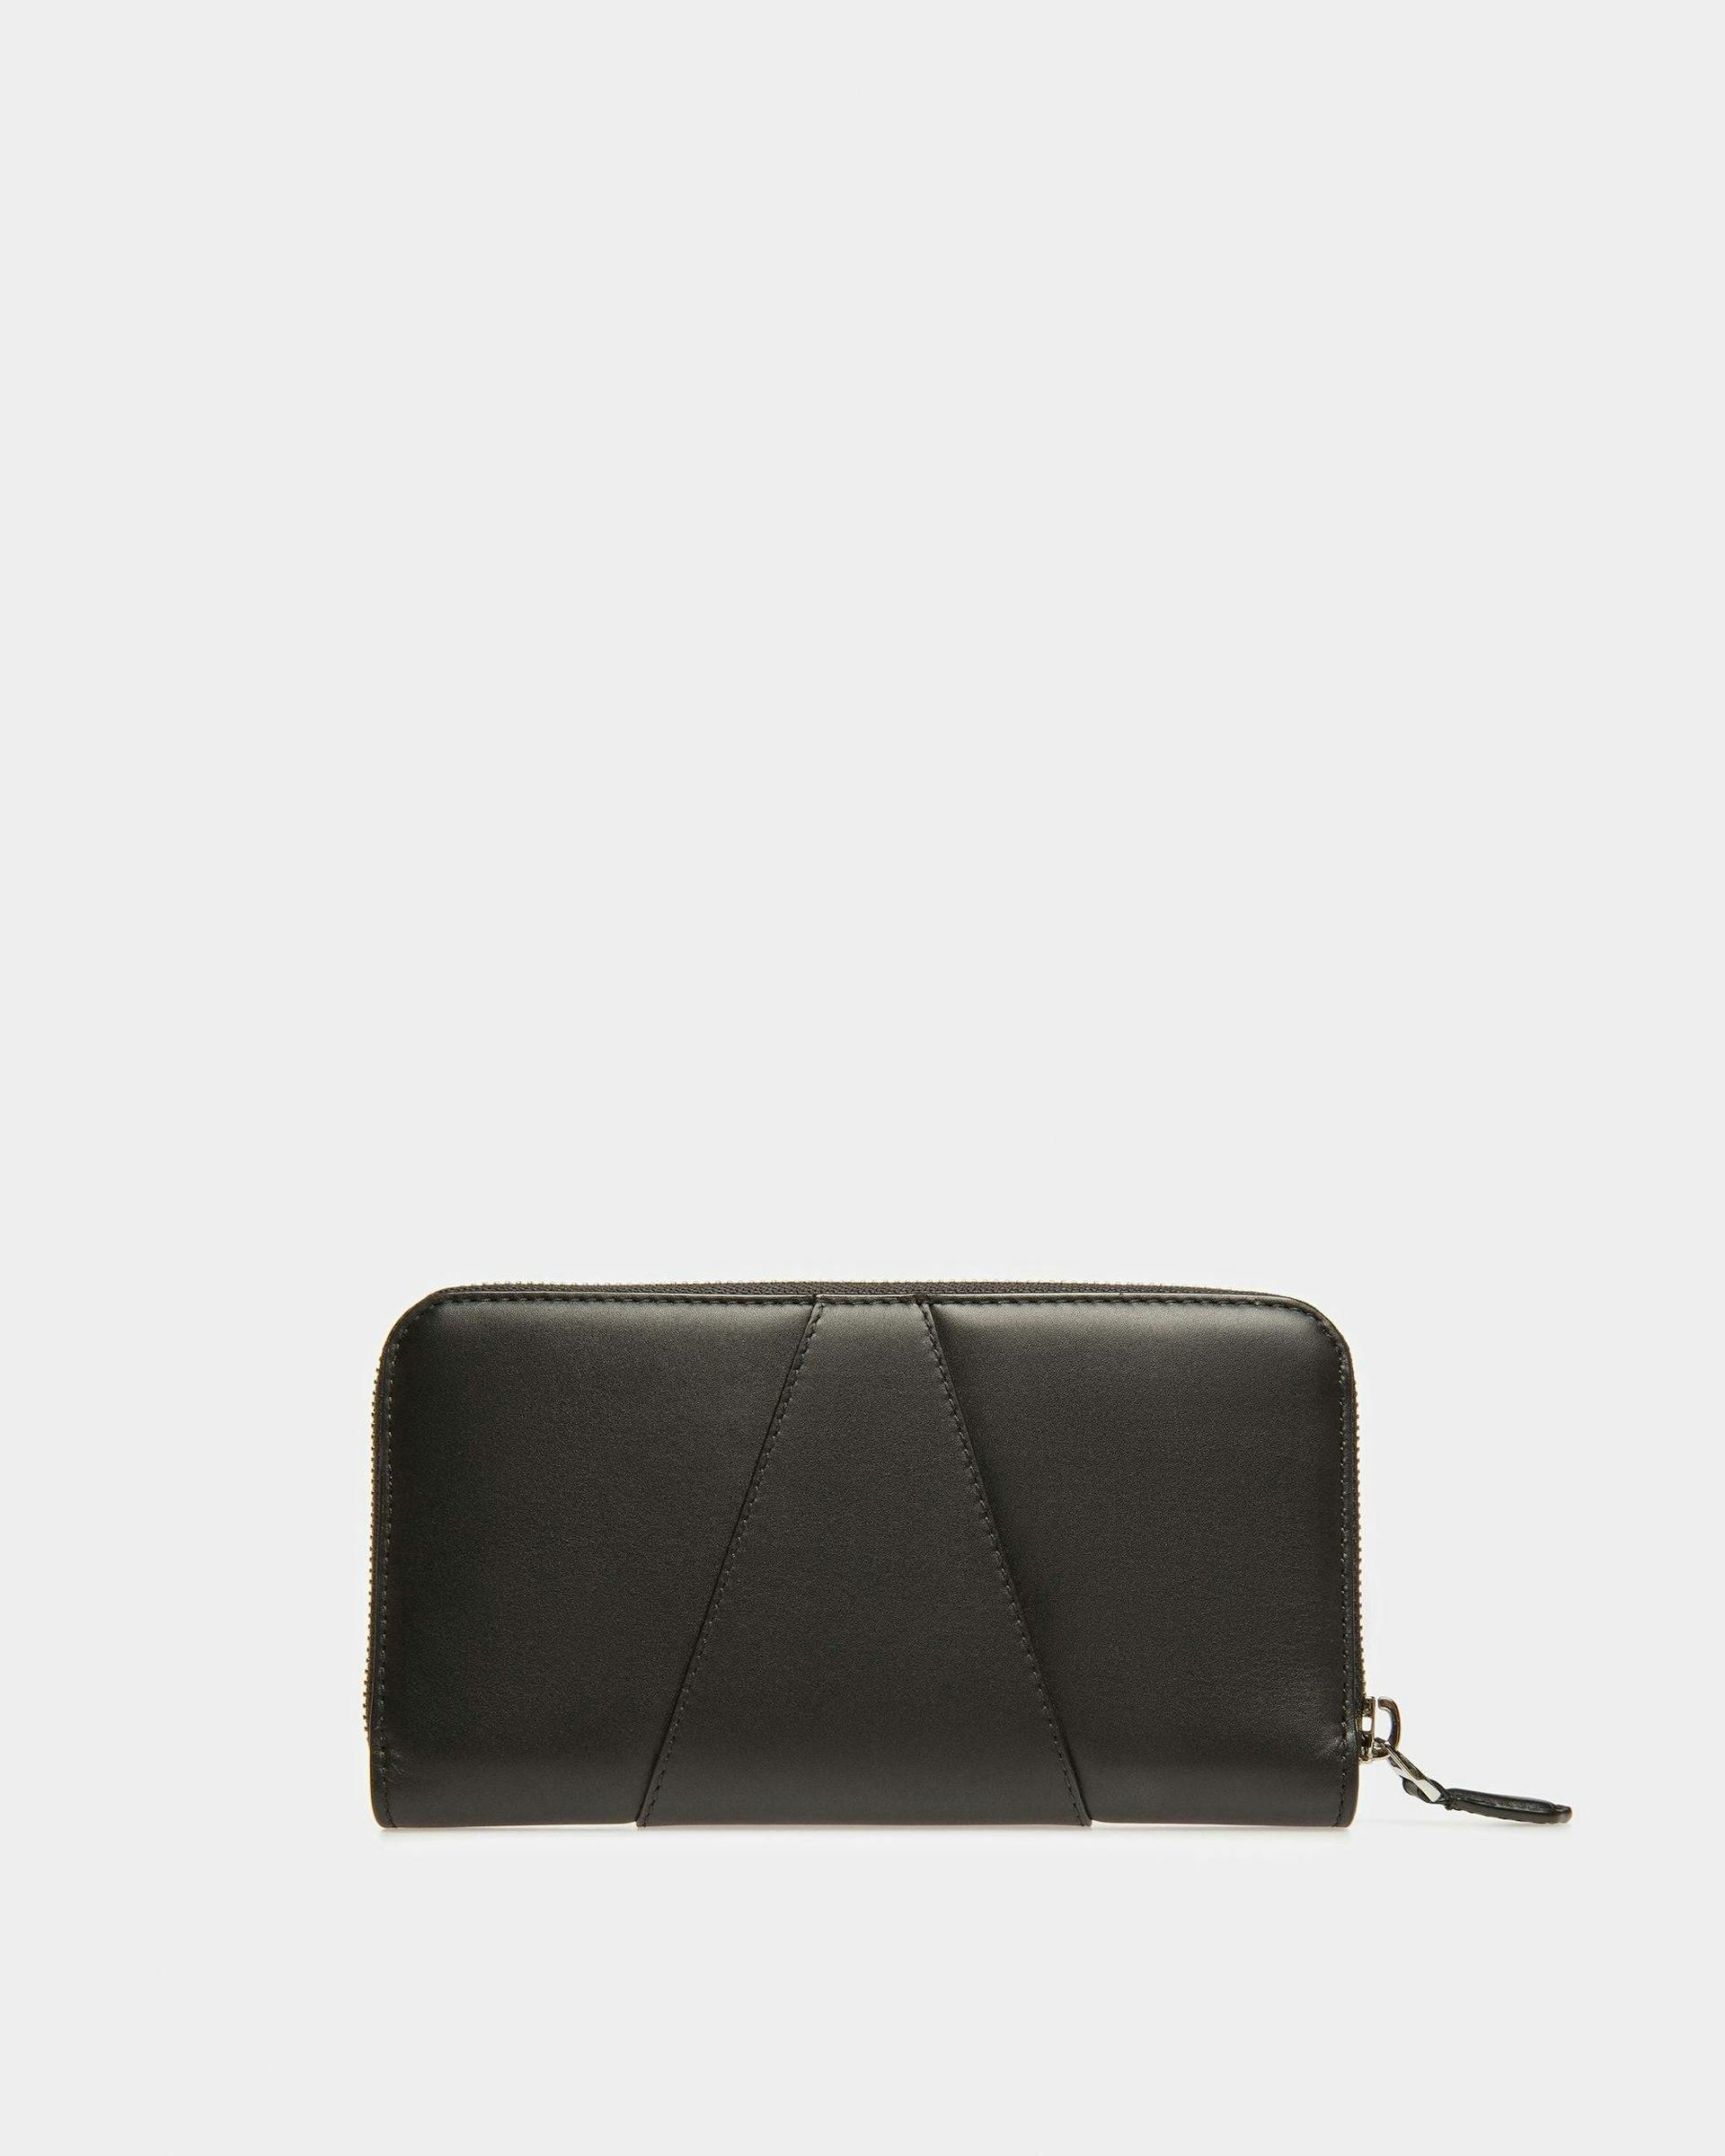 Avenor Leather Wallet In Black - Women's - Bally - 02